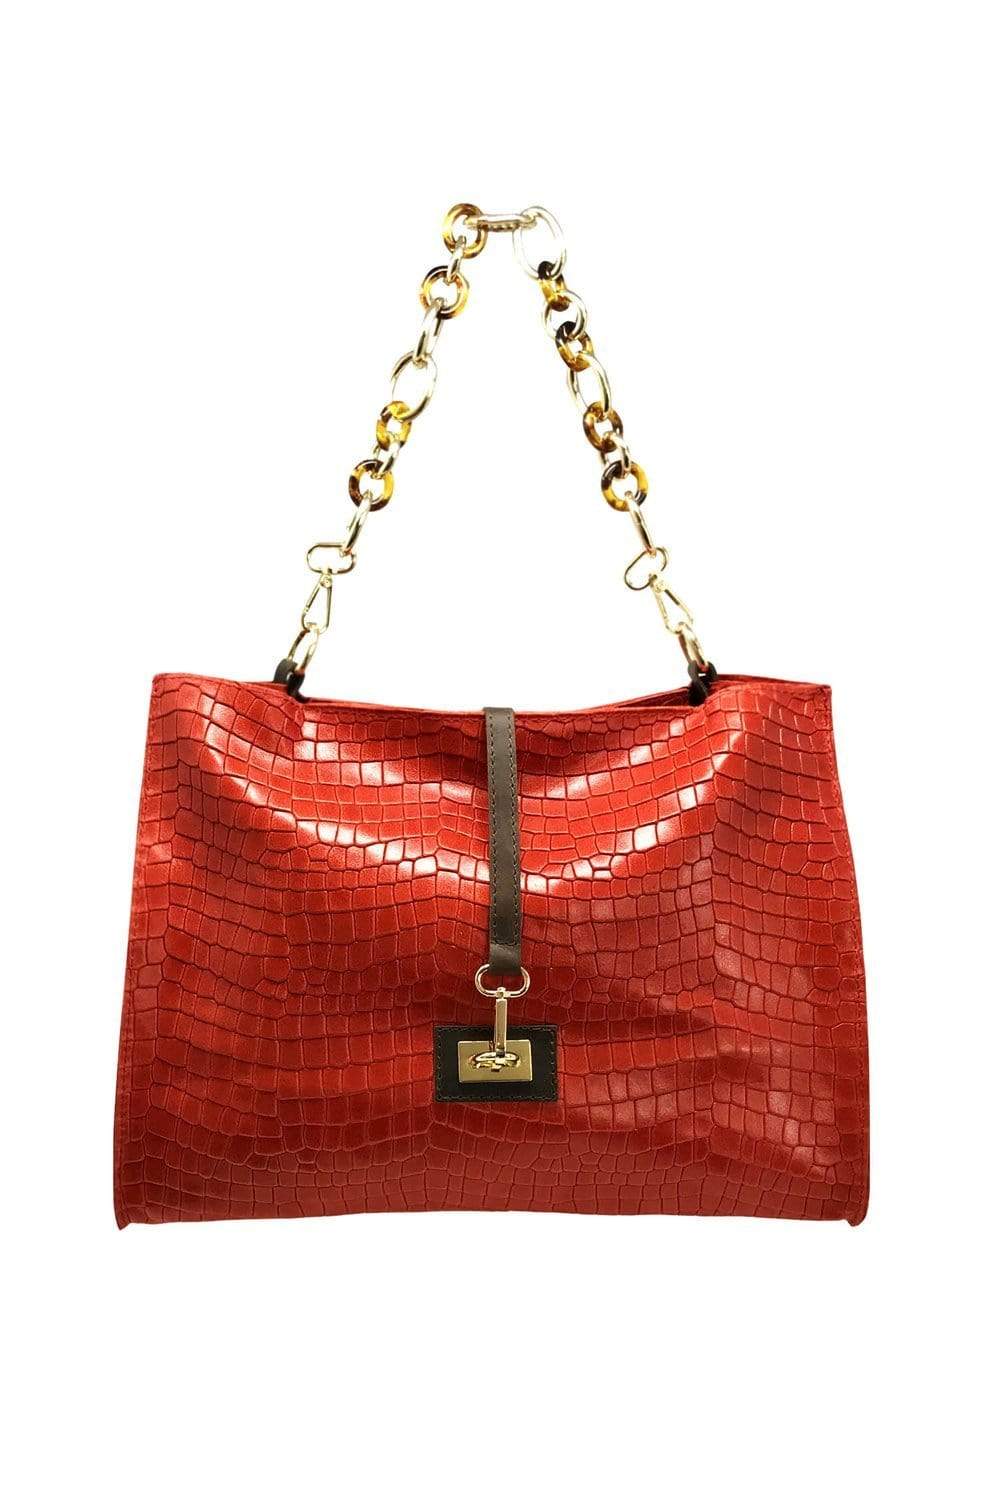 Messenger Bag, Women's Bag, Chain Bag, Handbag